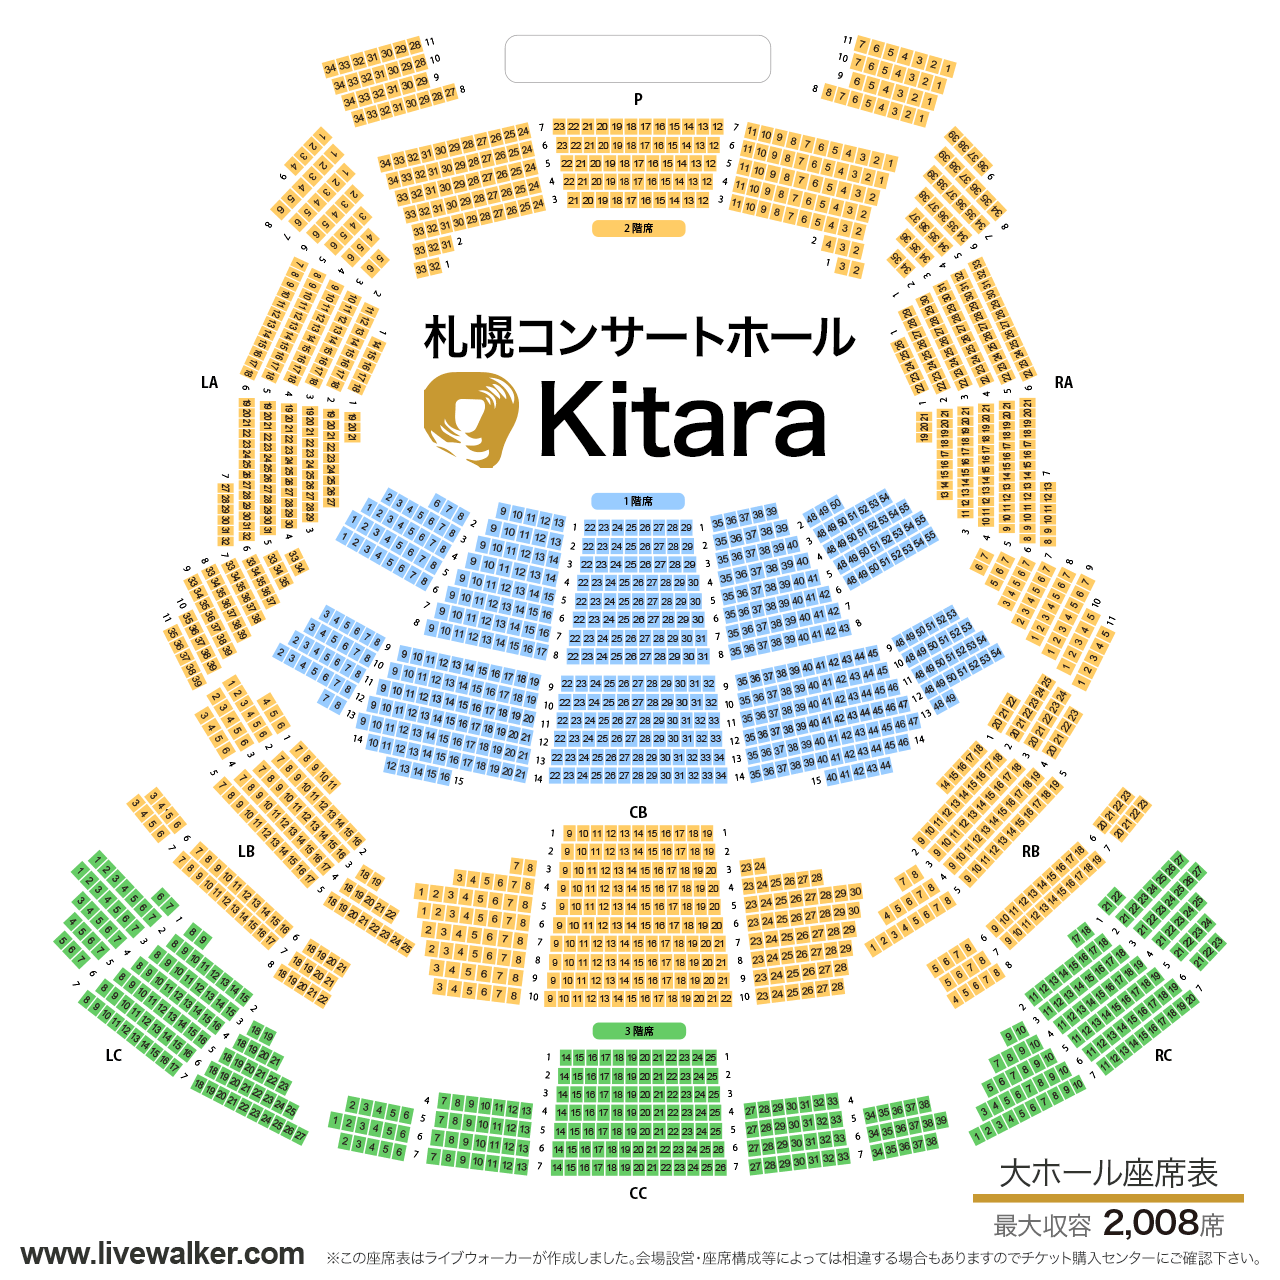 札幌コンサートホールKitara大ホールの座席表